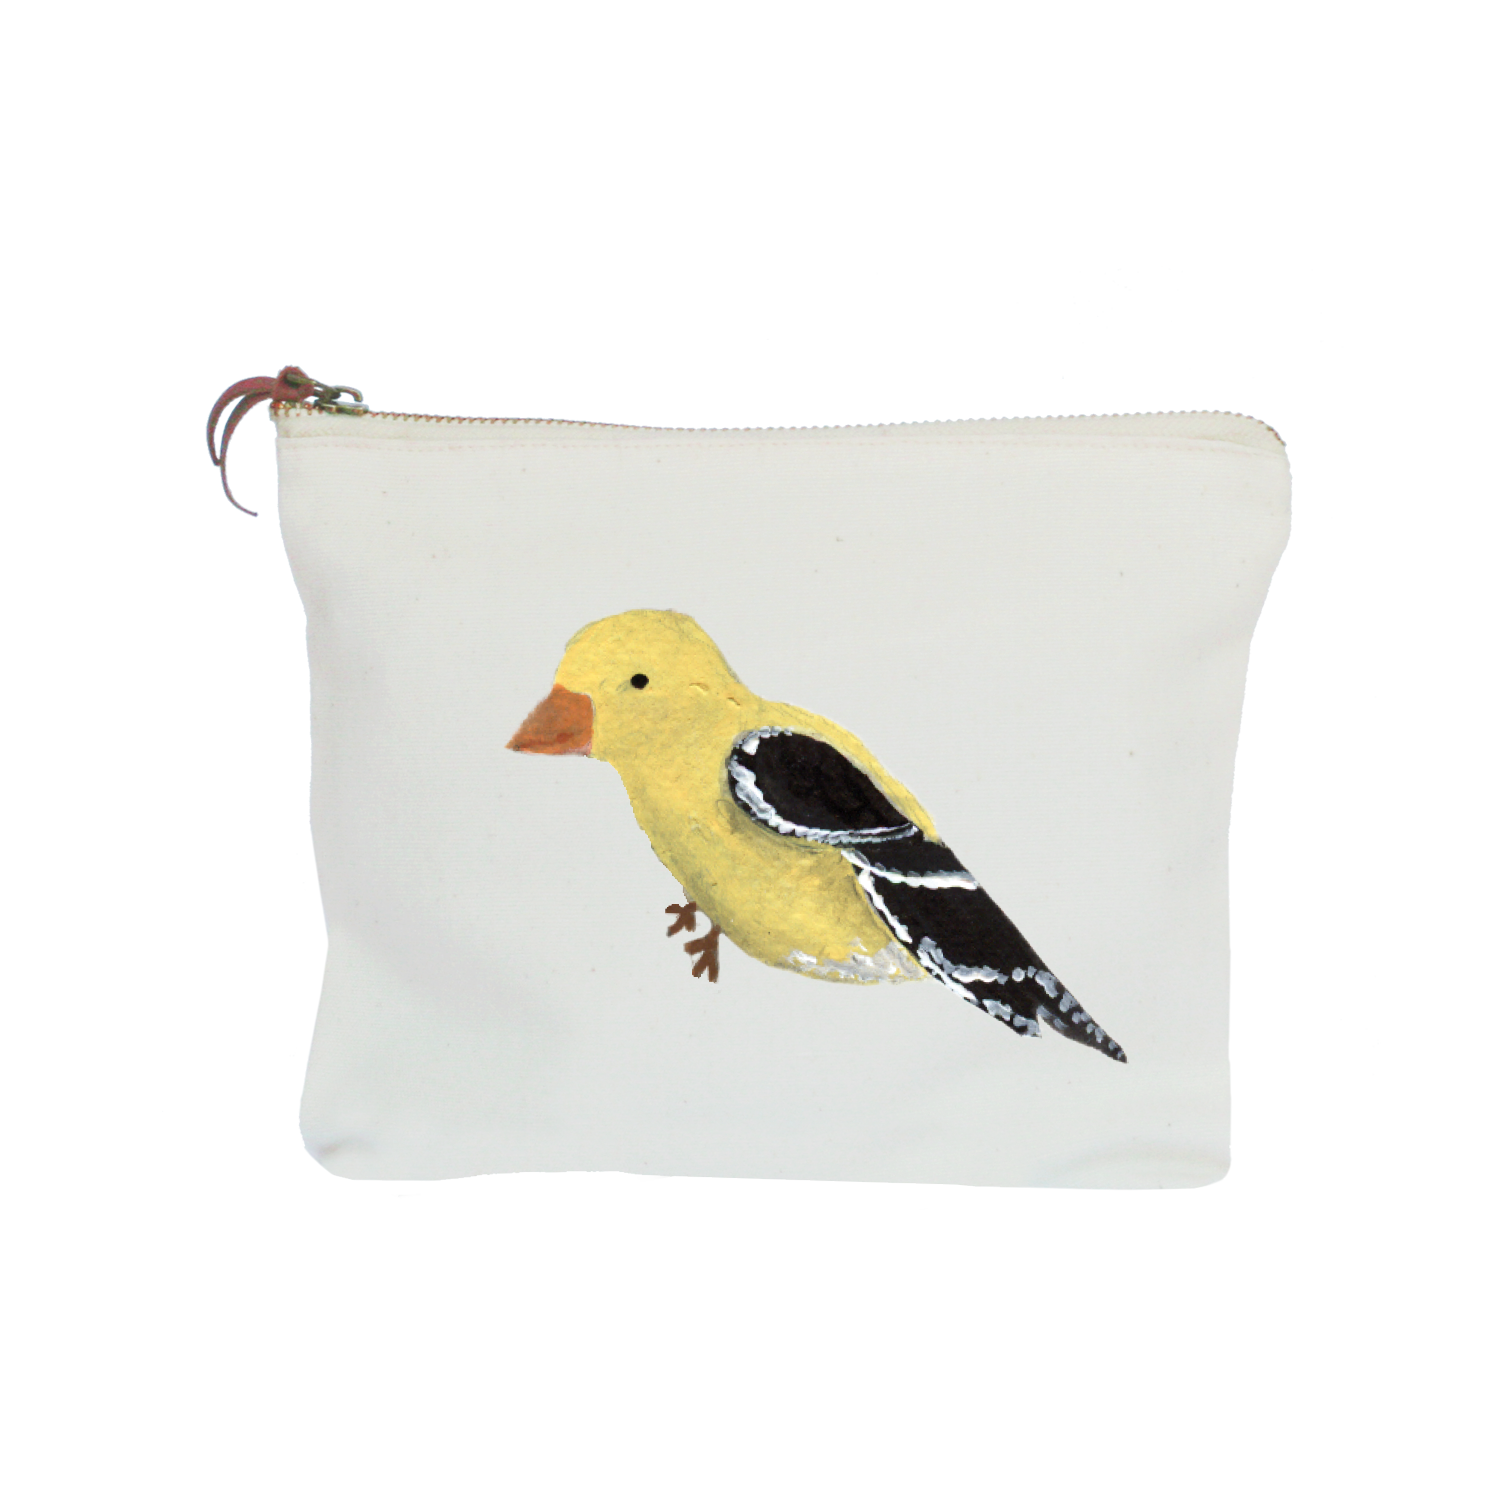 goldfinch zipper pouch